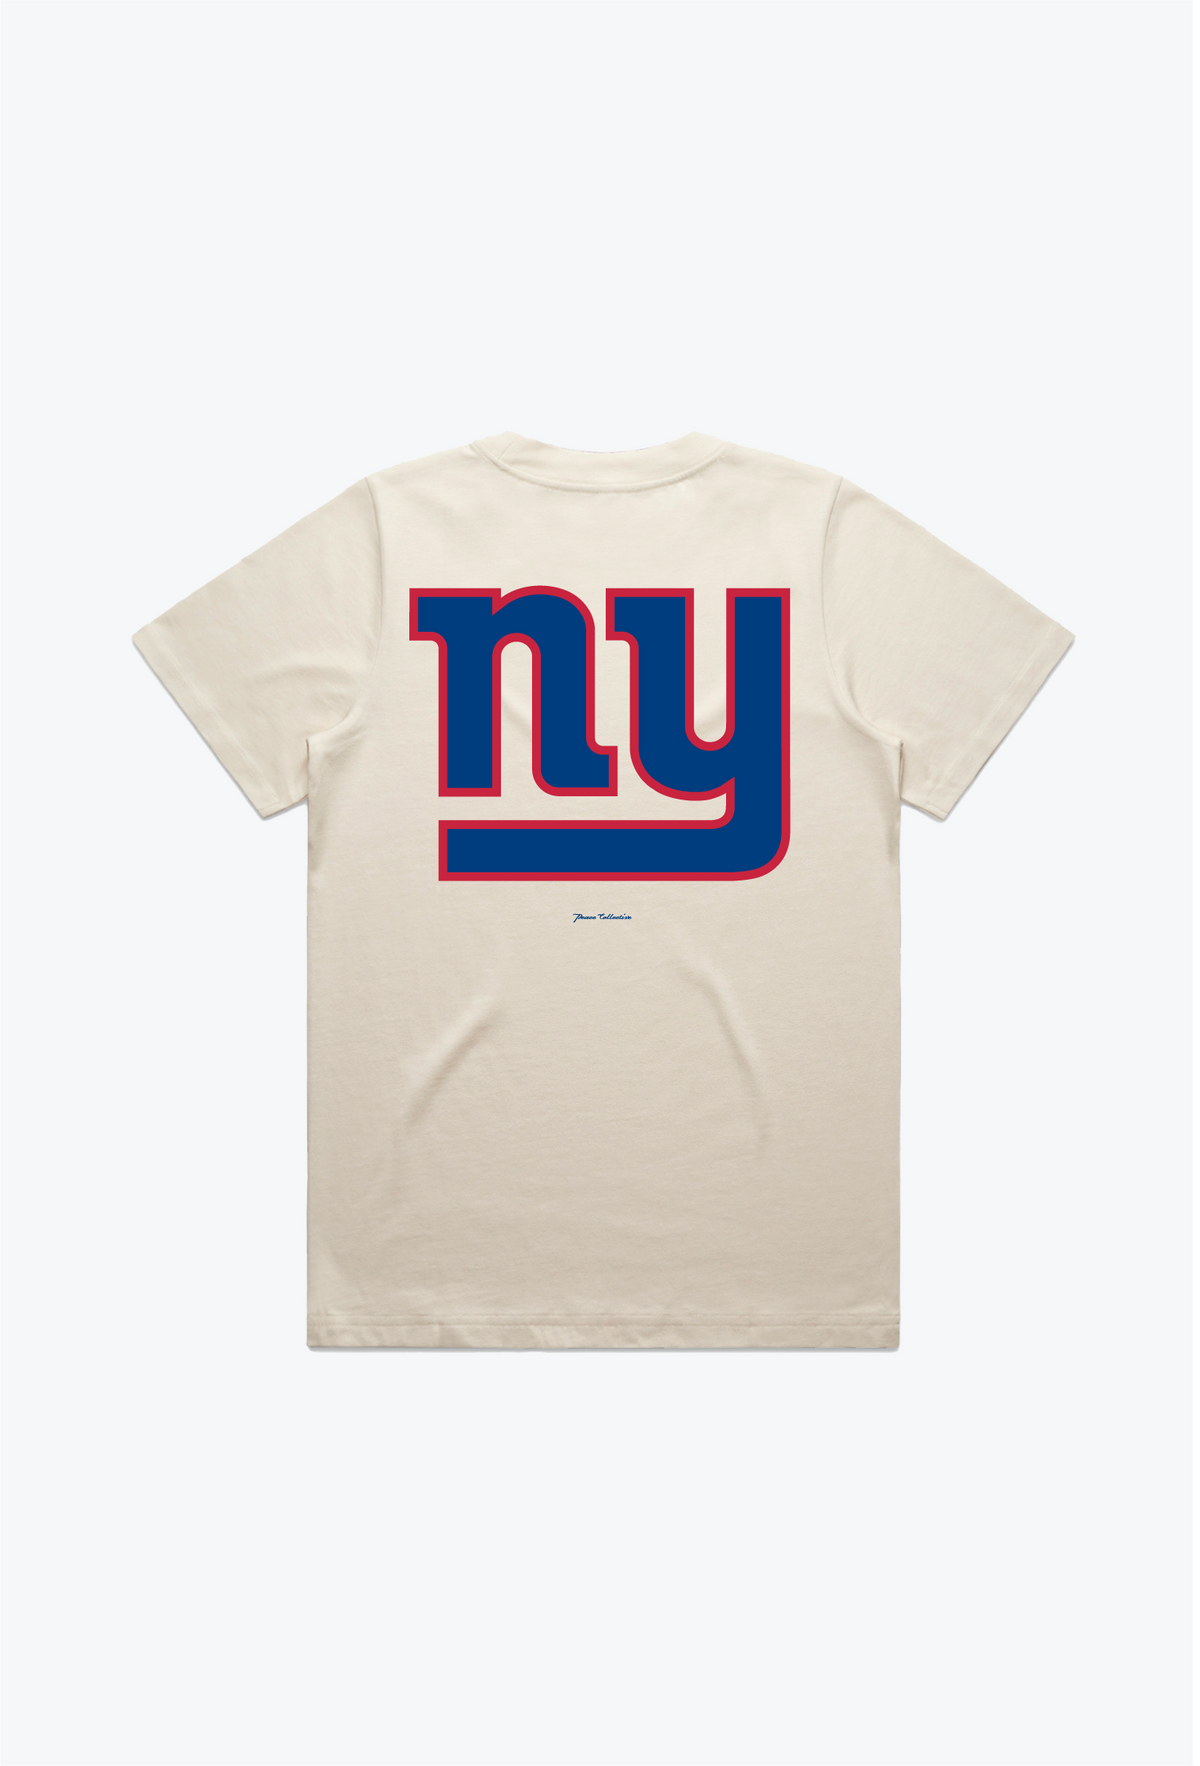 New York Giants Women's Heavyweight T-Shirt - Natural